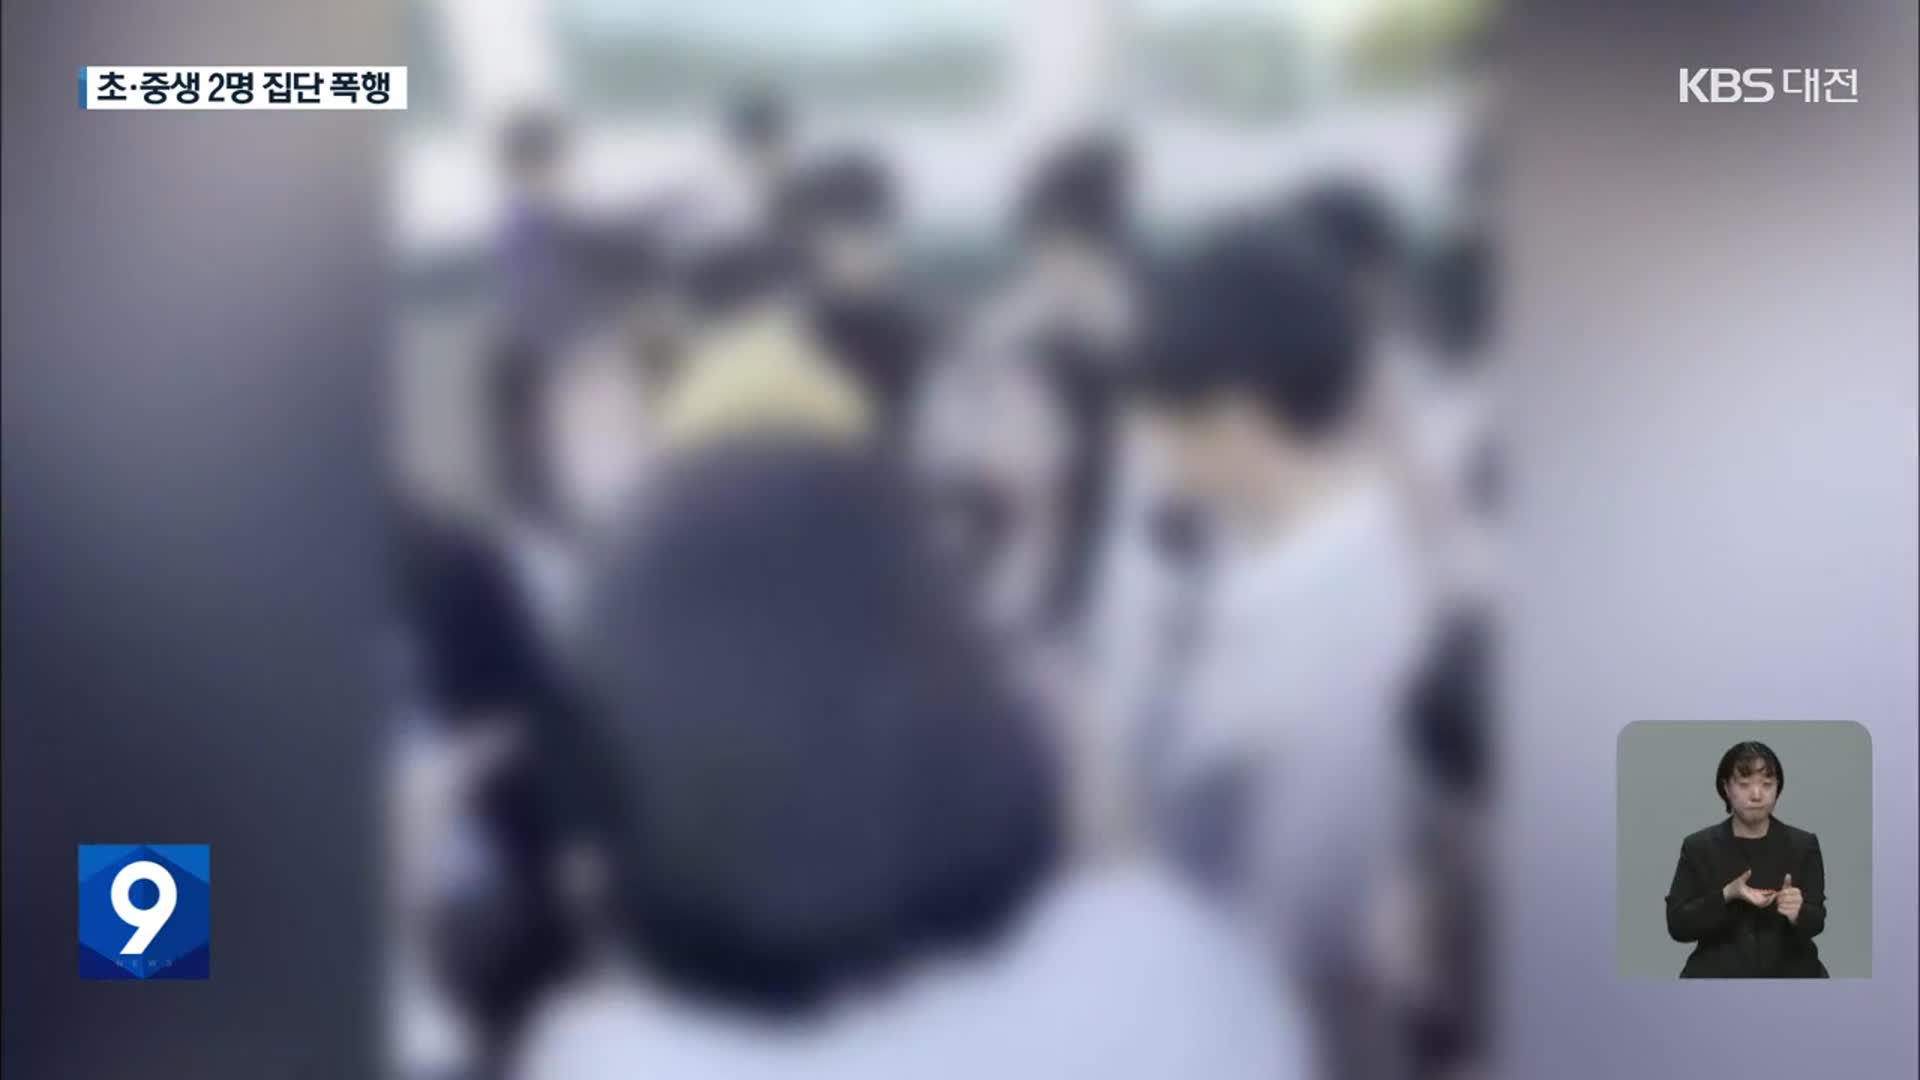 “10여 명이 여중생 집단폭행”…촬영에 영상 공유까지